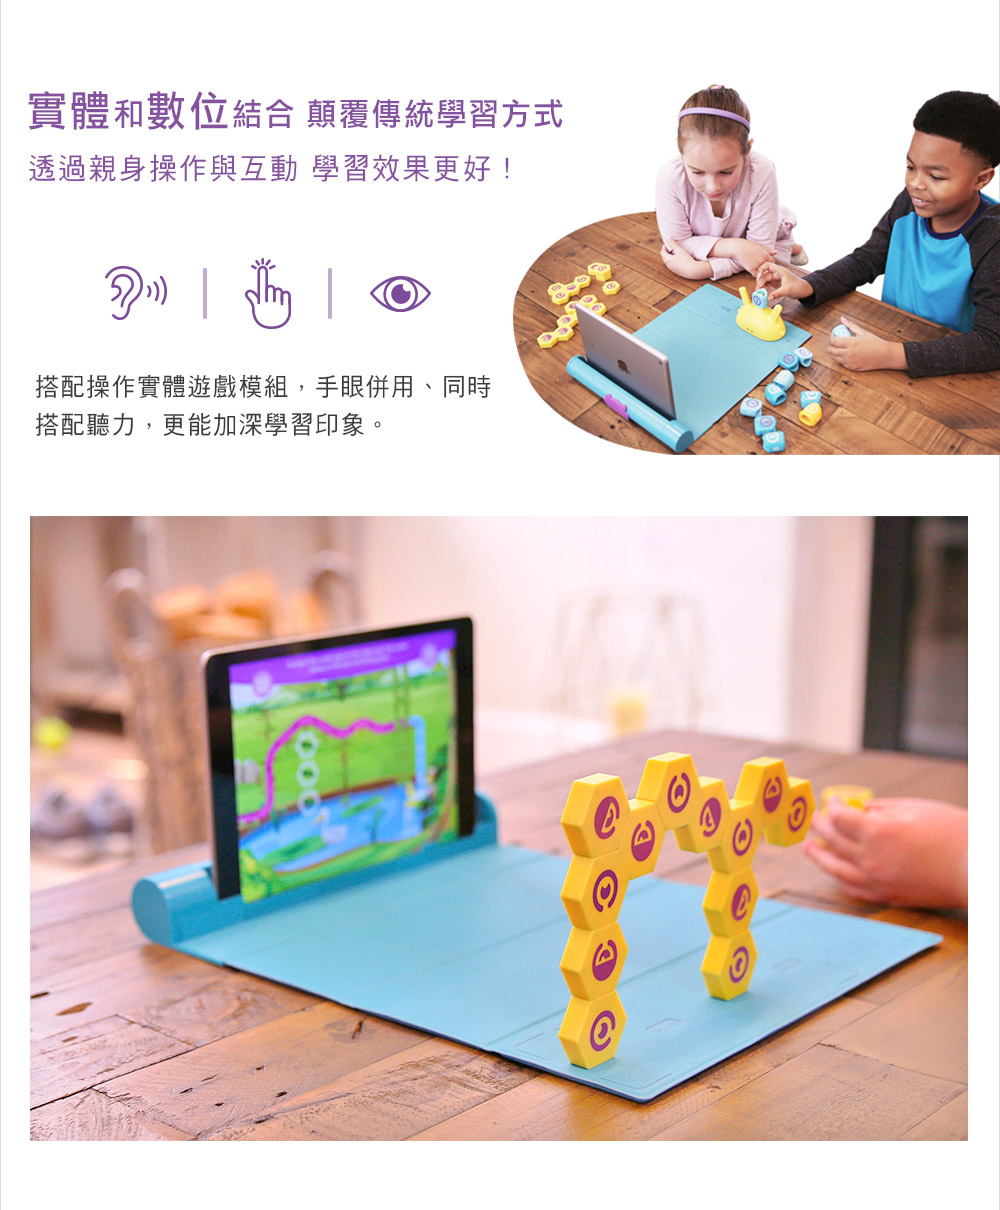 PLUGO 互動式益智教具 邏輯思考 | shifu 互動式玩具